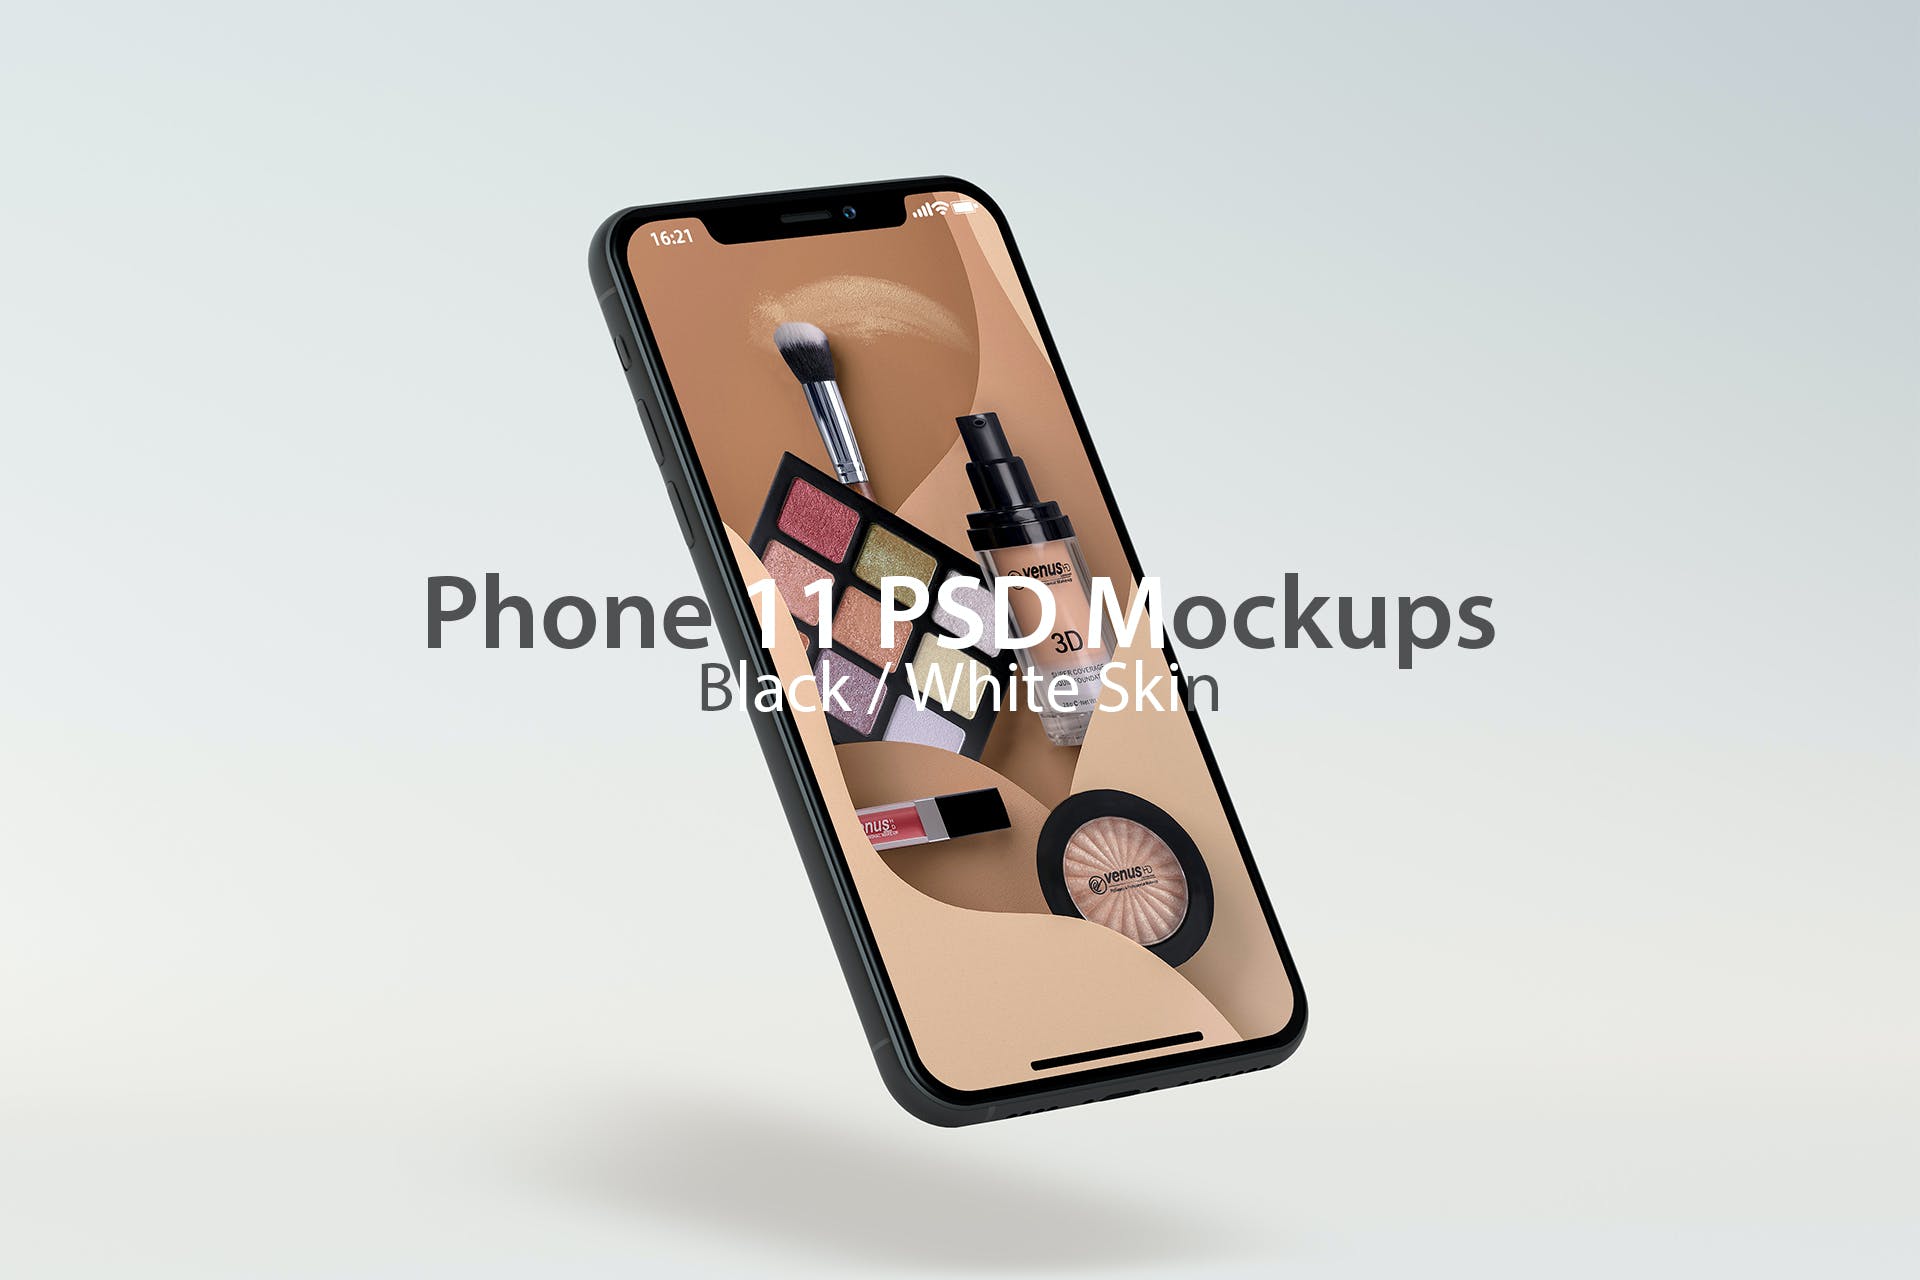 苹果手机iPhone 11屏幕展示PSD样机 iPhone 11 PSD Mock-ups设计素材模板